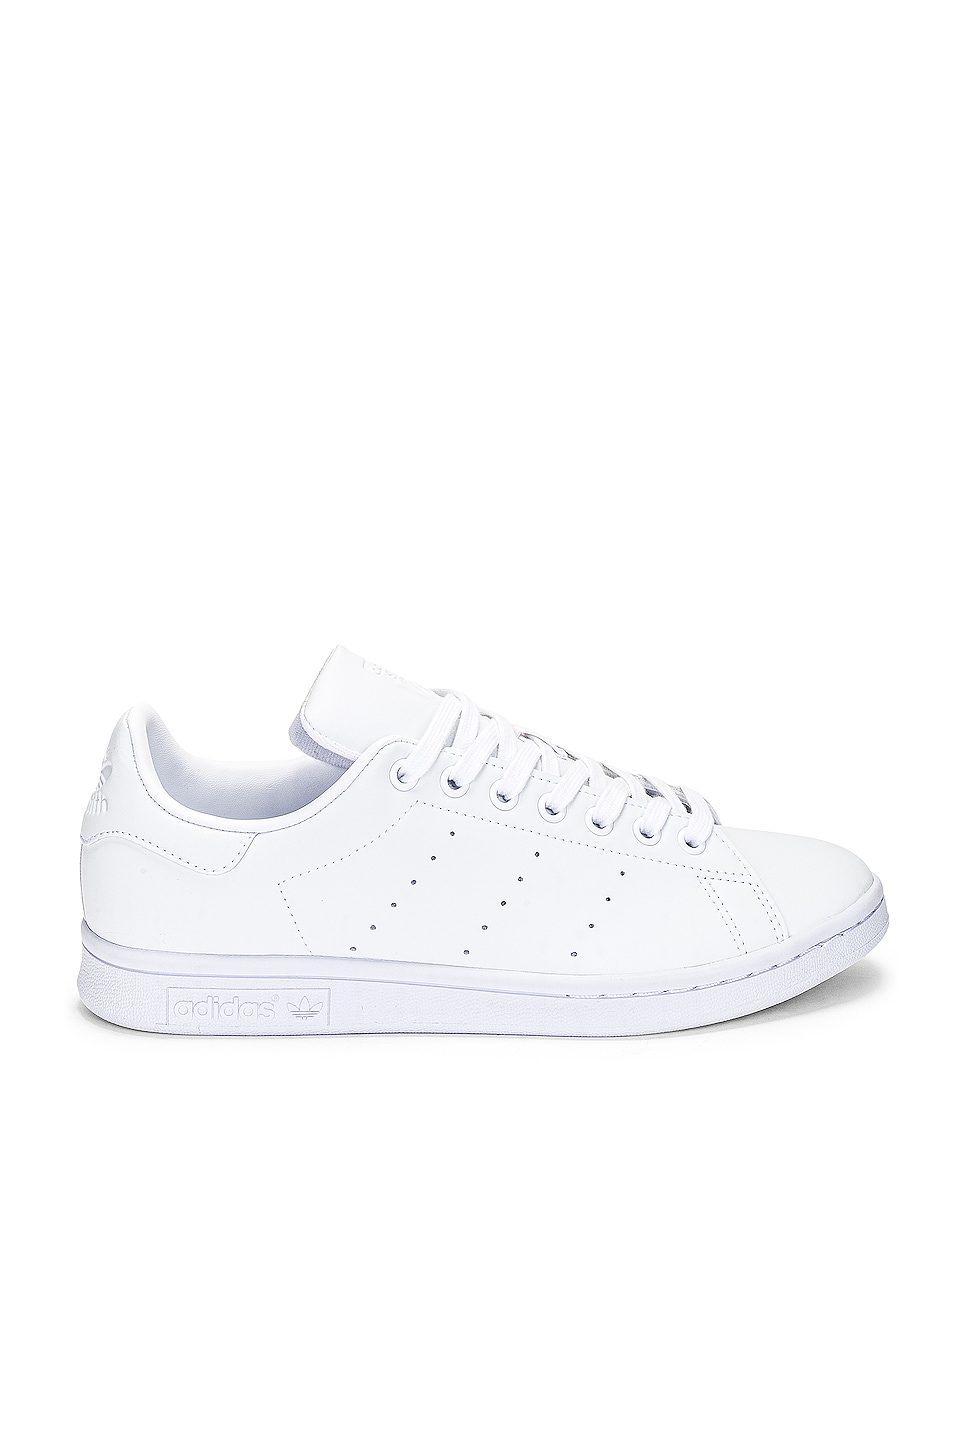 adidas Originals Stan REVOLVE Black Sneaker in Smith | & Core White